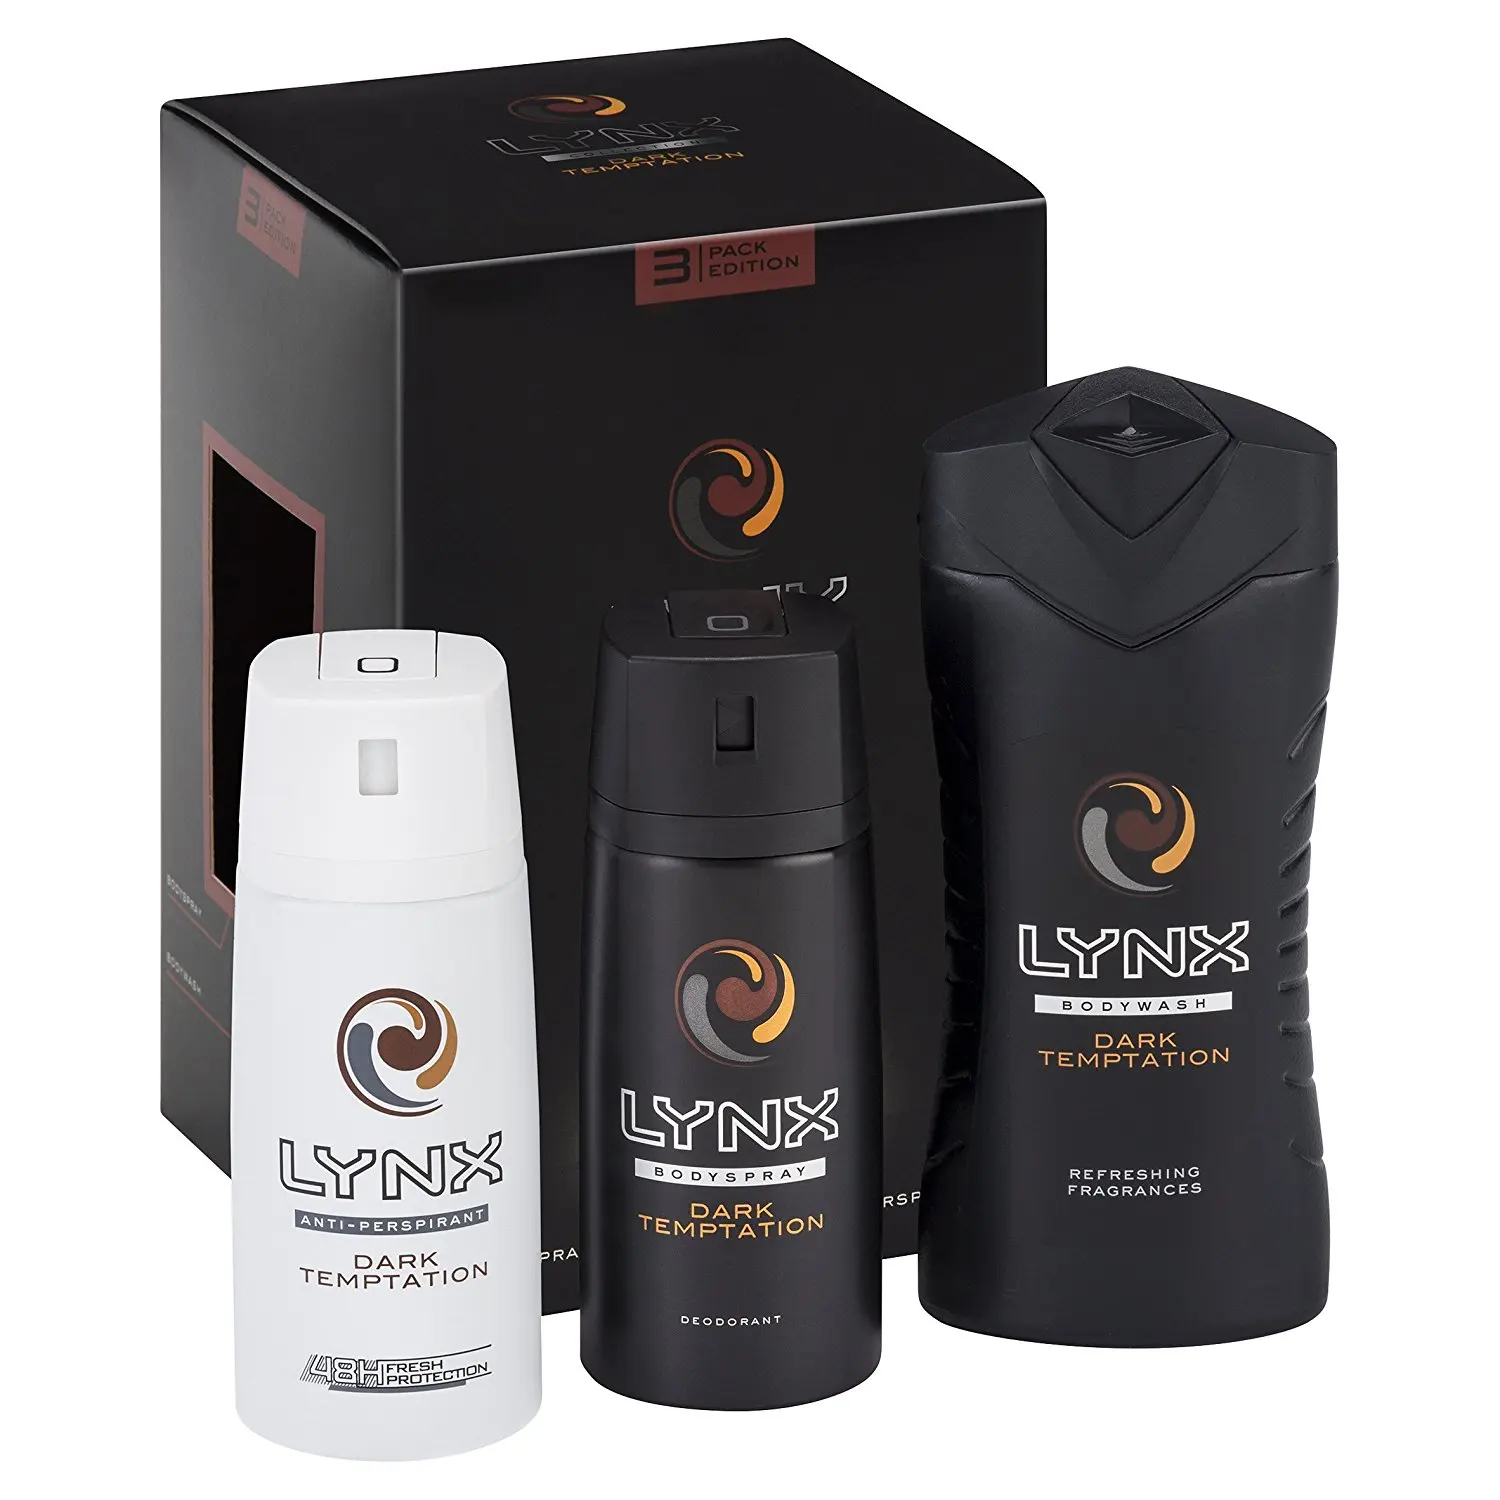 lynx body spray gift set